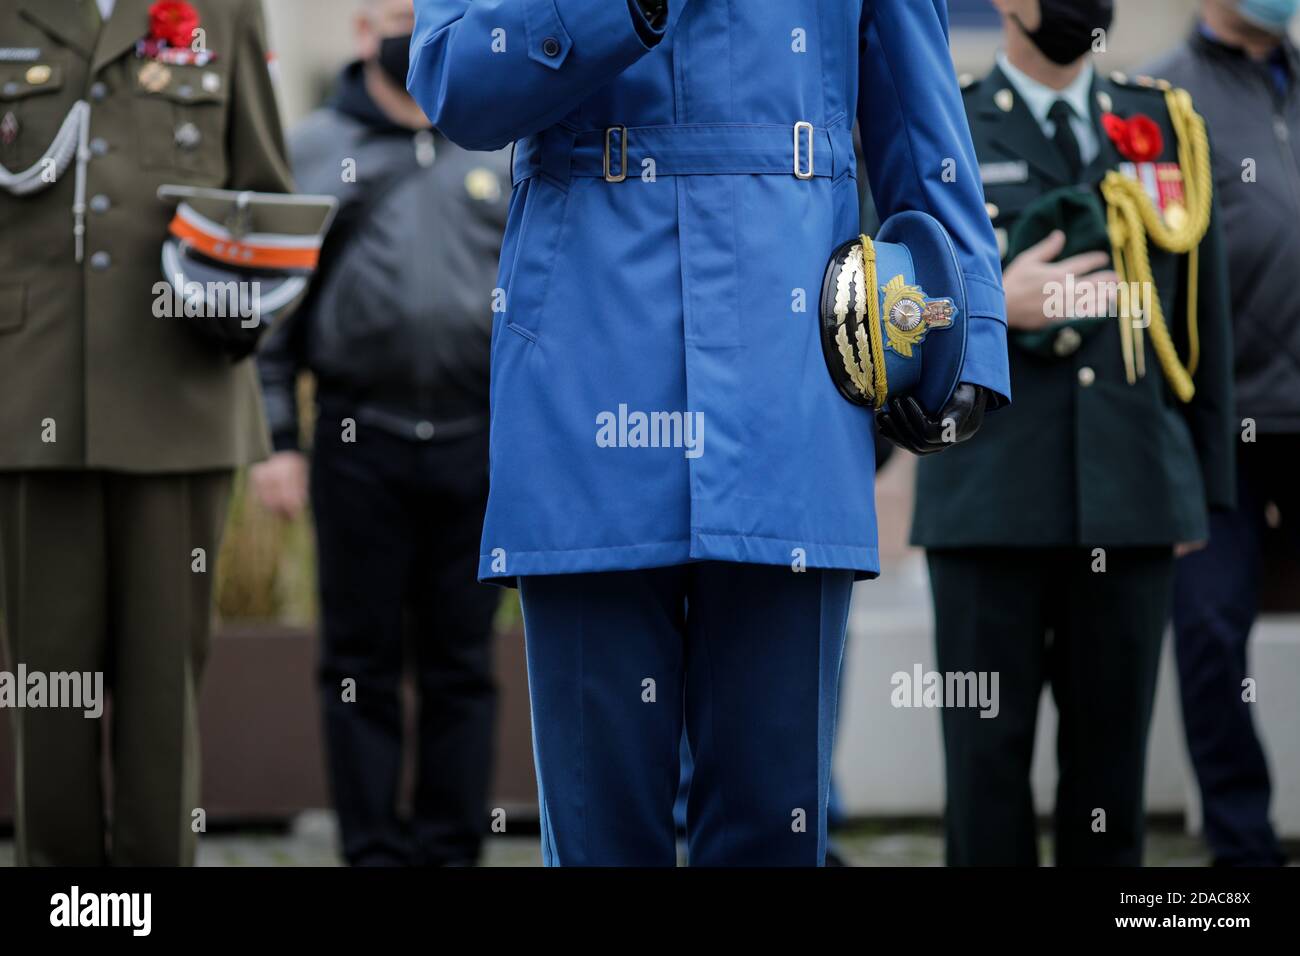 Bucarest, Romania - 11 novembre 2020: Dettagli di un ufficiale dell'esercito rumeno che tiene il suo cappellino di servizio durante una preghiera silenziosa. Foto Stock